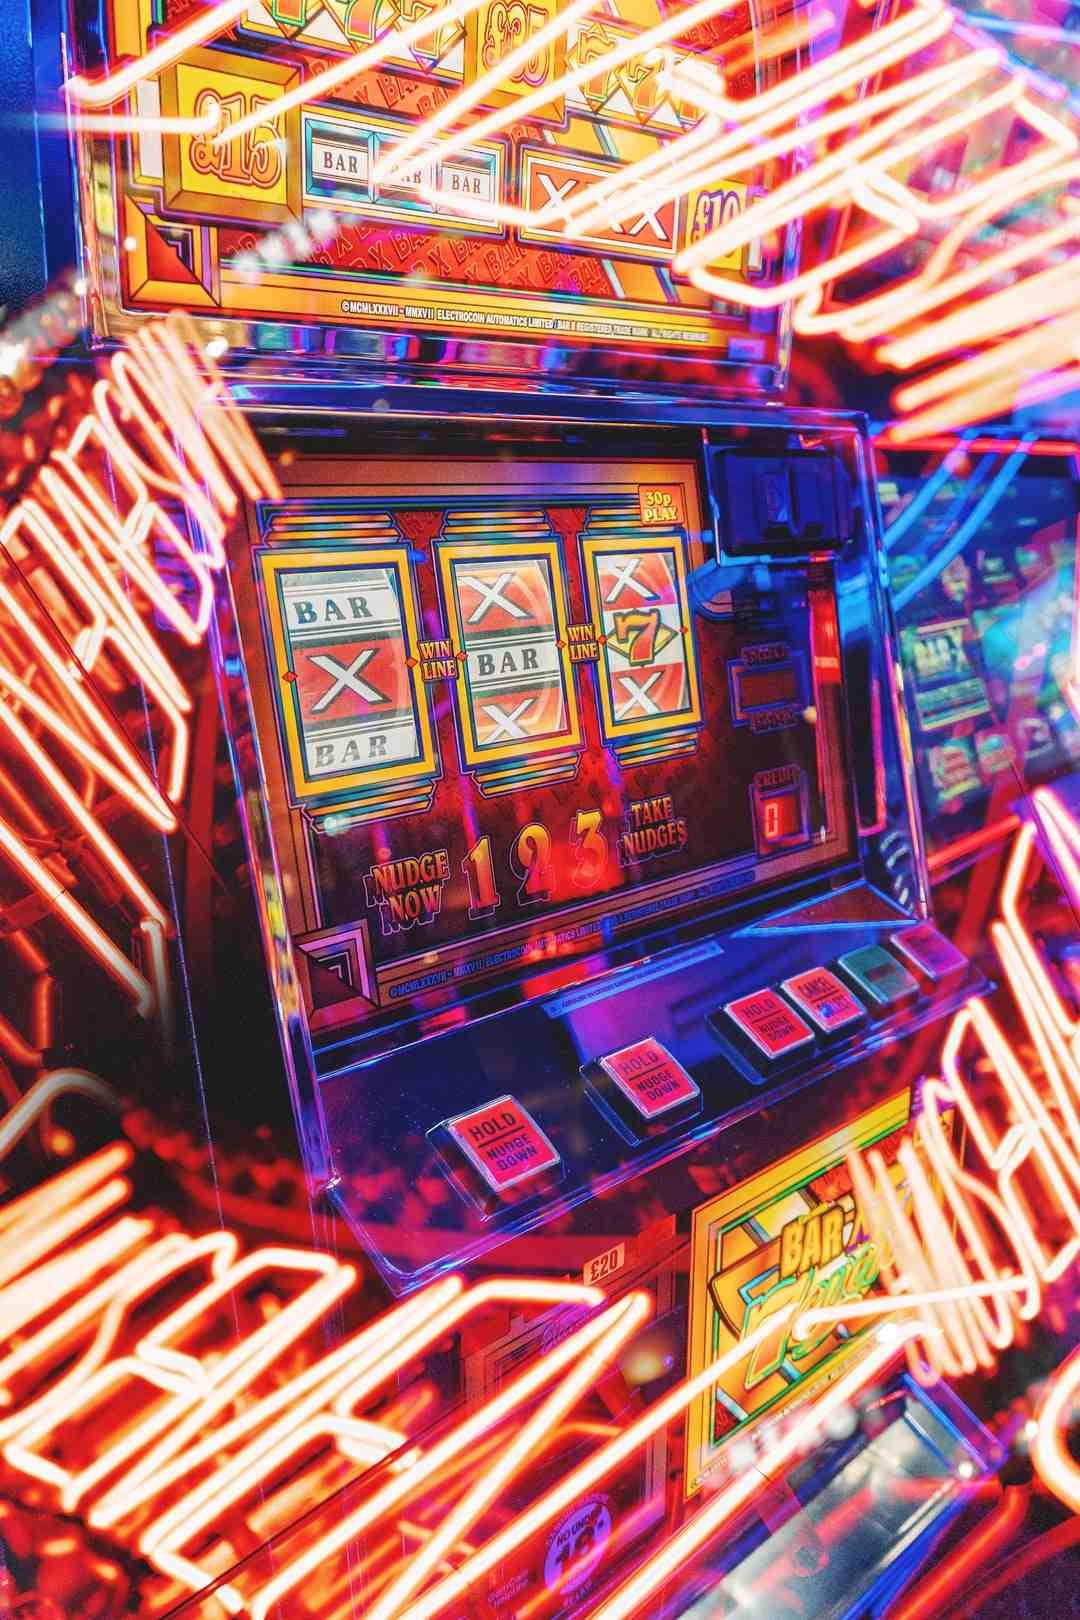 Quels sont les casinos en ligne de confiance ?